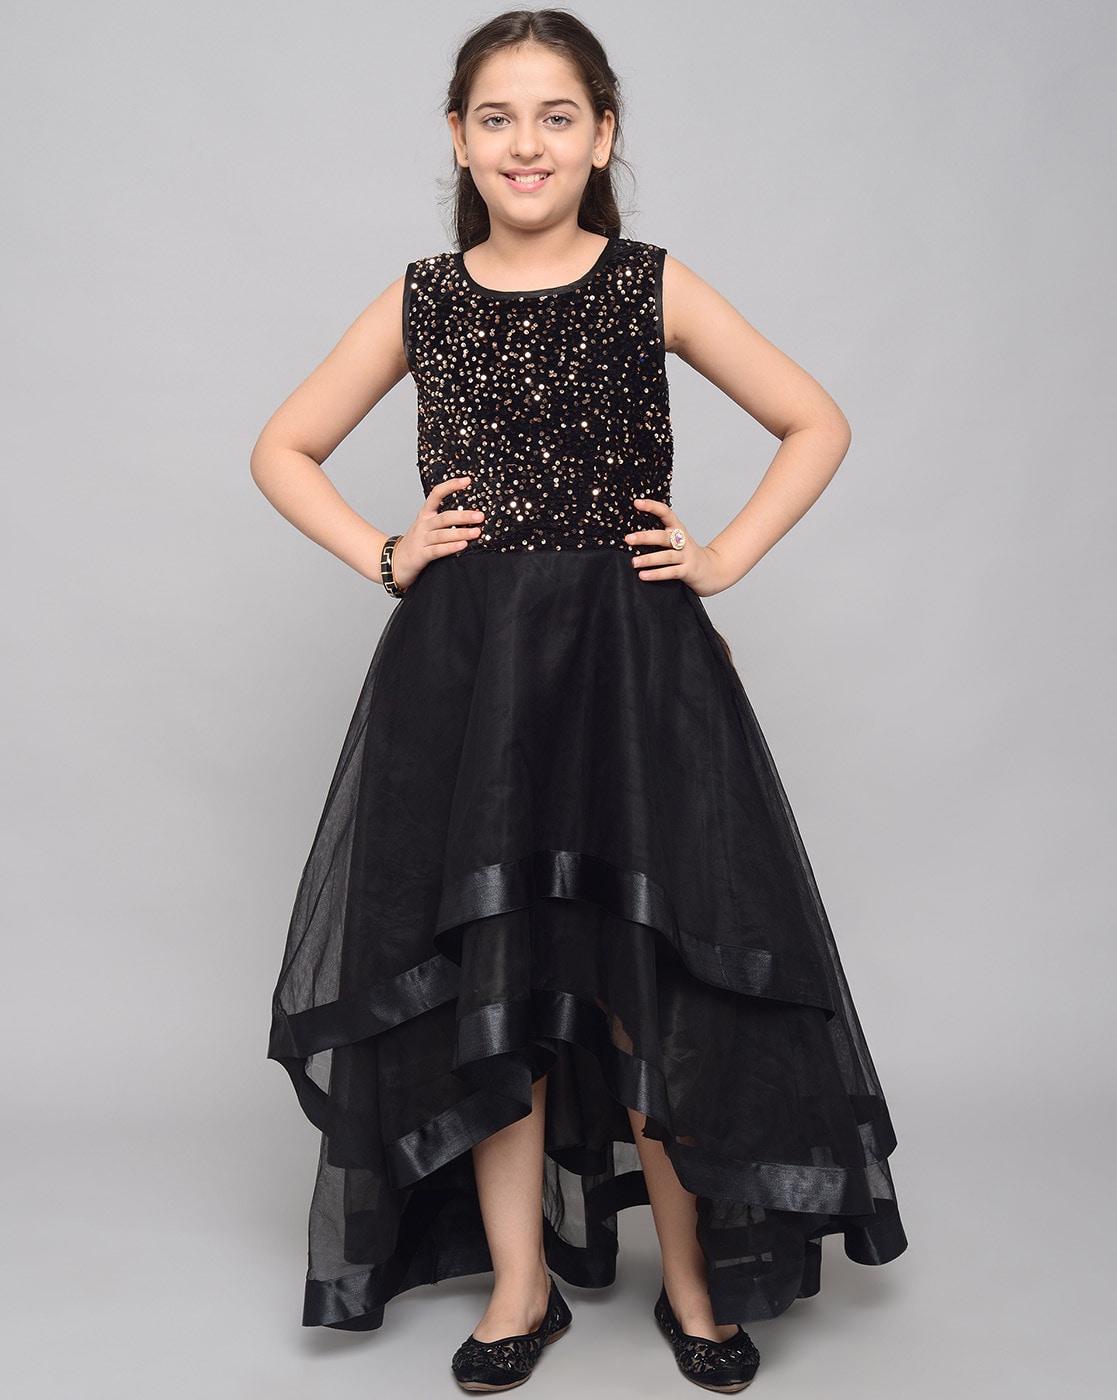 New stylish black dresses for girls|new design black dresses |black dress  collection| - YouTube